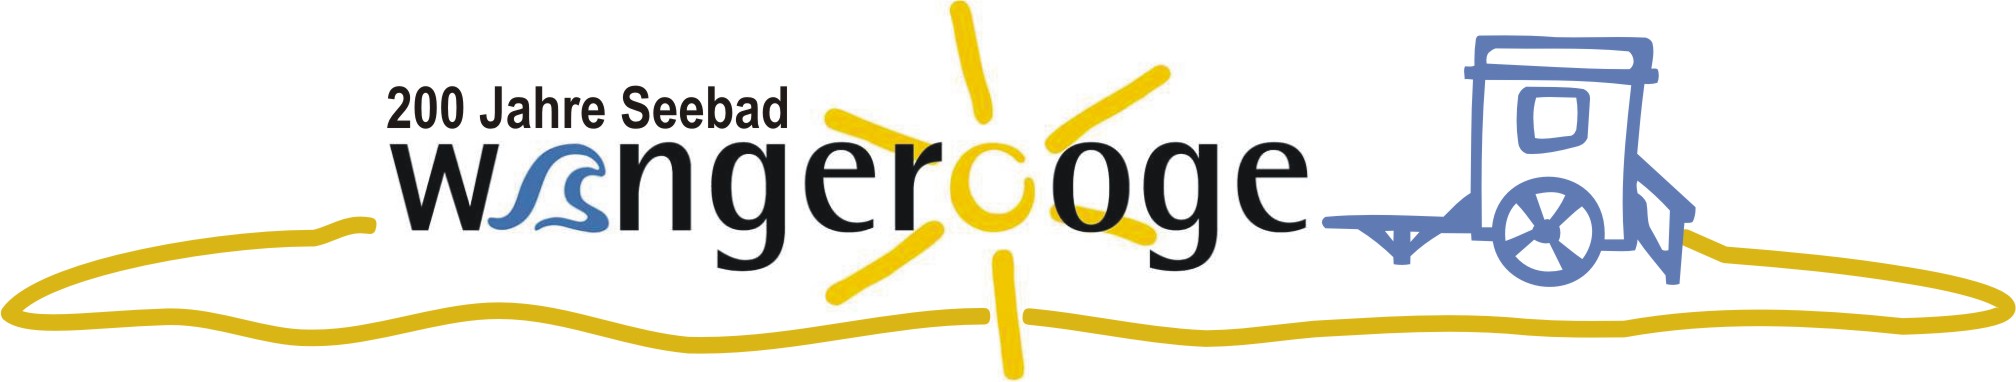 logo kv 2004